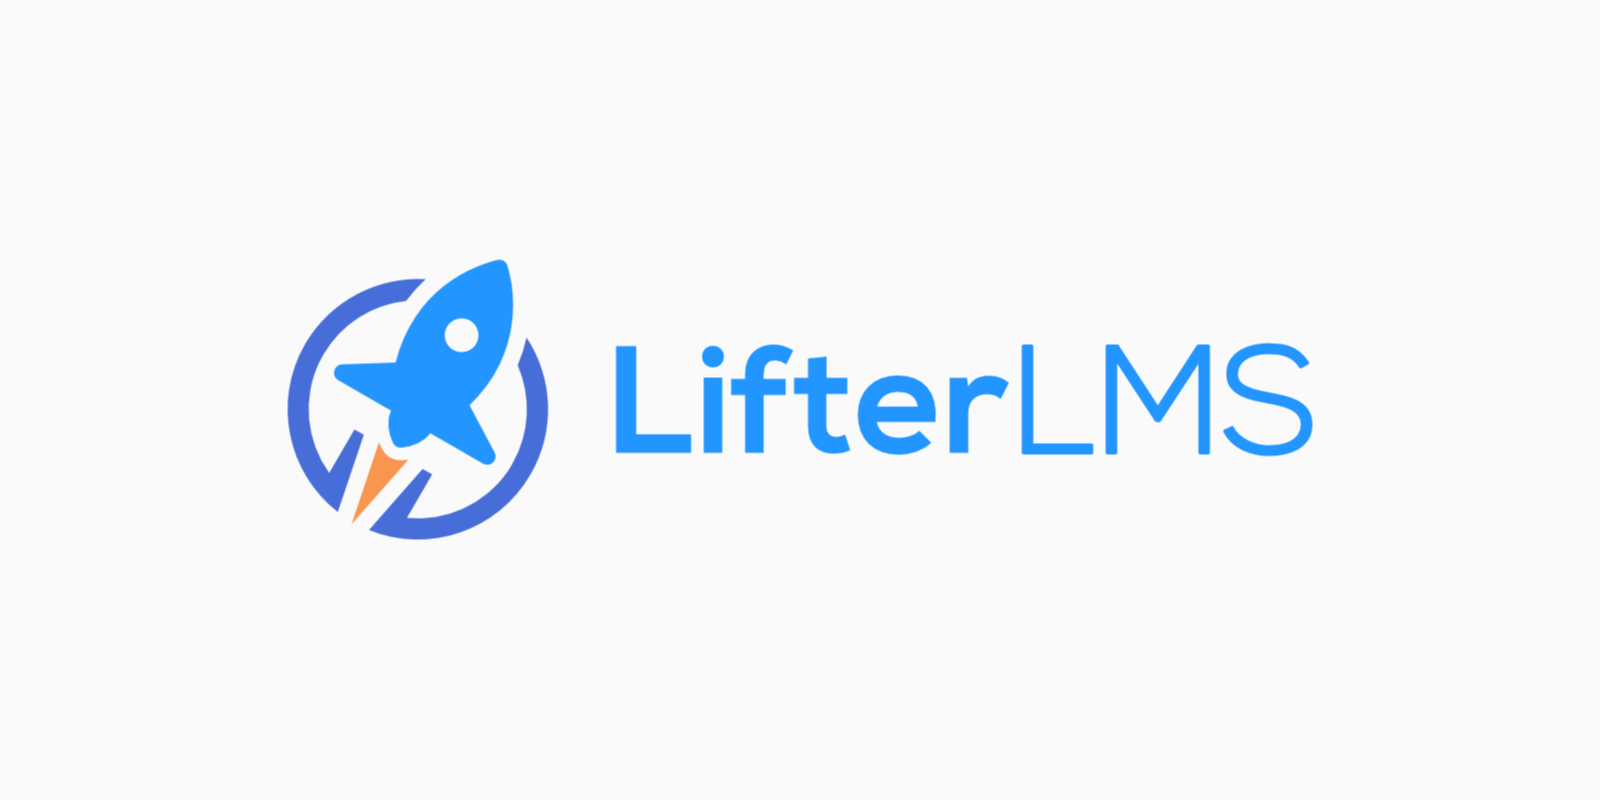 طريقة إنشاء موقع الكتروني تعليمي باستخدام إضافة LifterLMS